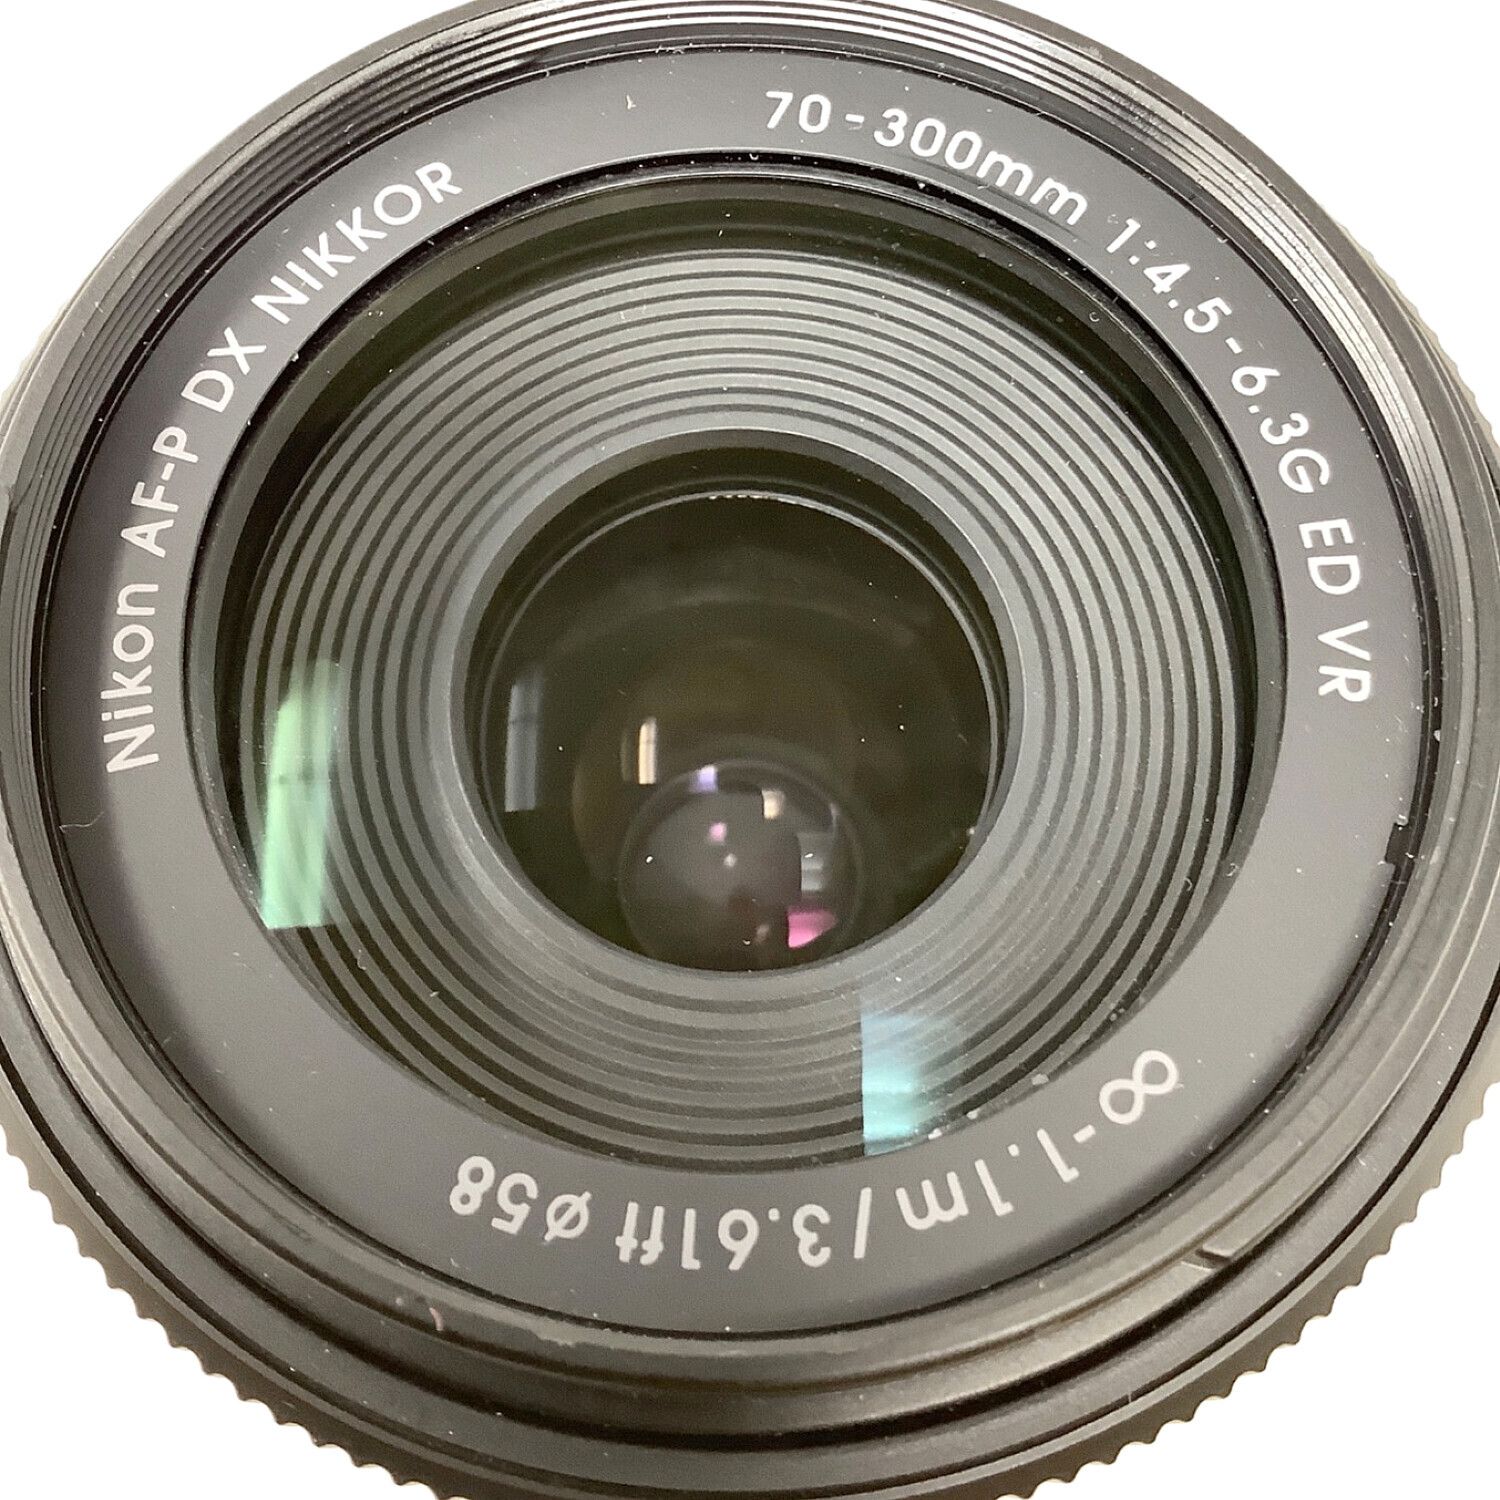 Nikon (ニコン) ズームレンズ AF-P NIKKOR 70-300mm 1:4.5-6.3G ED